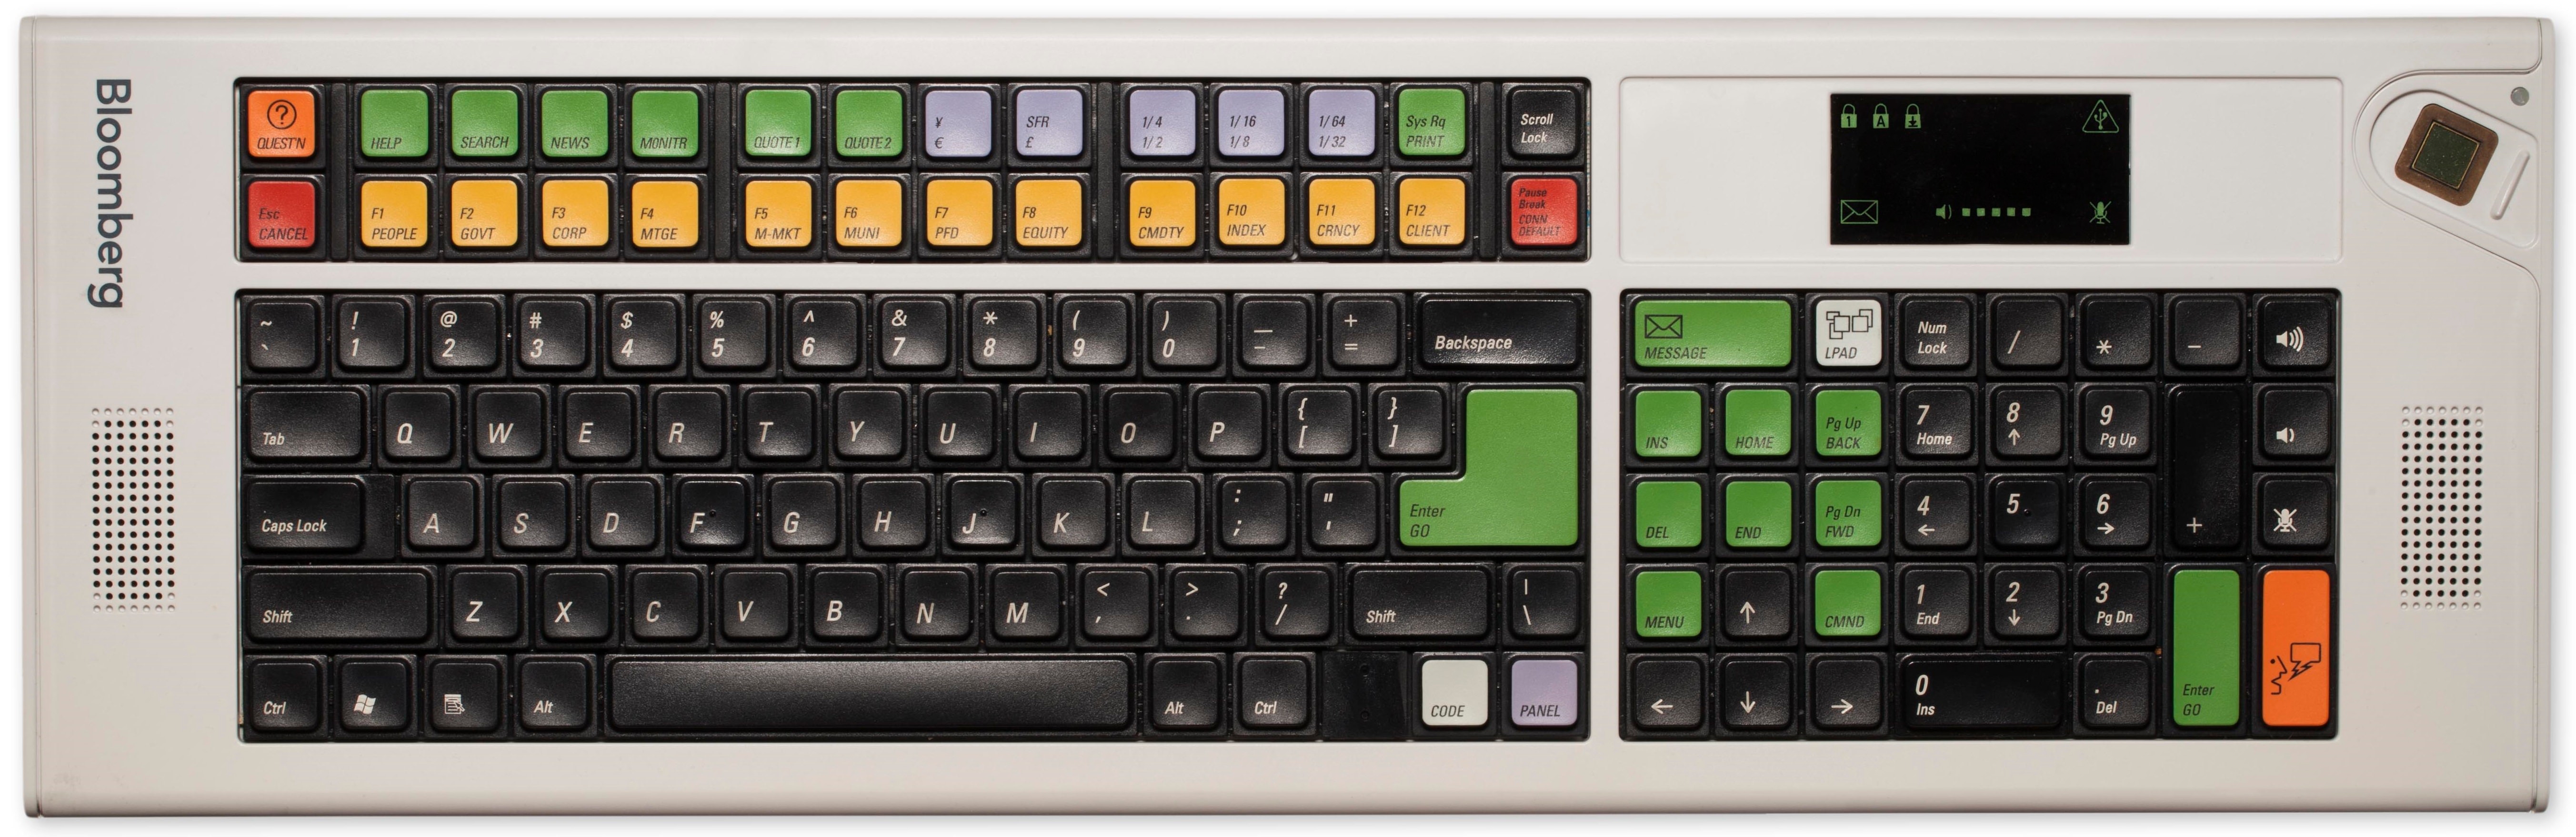 bloomberg terminal keyboard